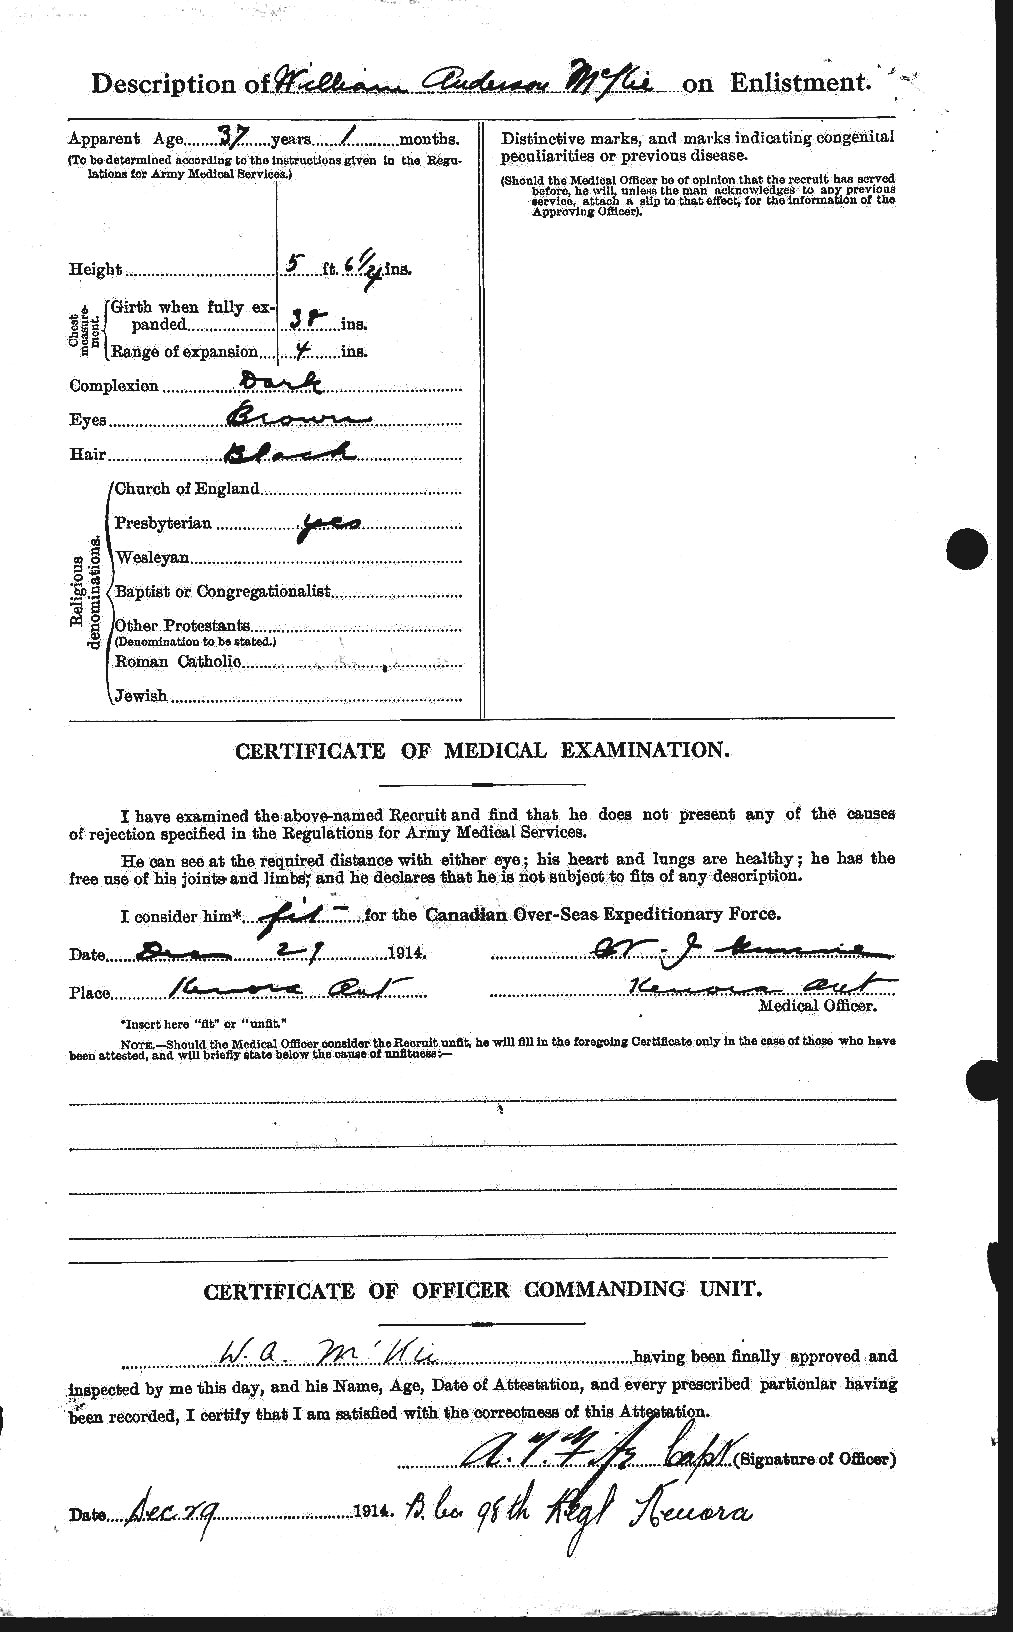 Dossiers du Personnel de la Première Guerre mondiale - CEC 533766b